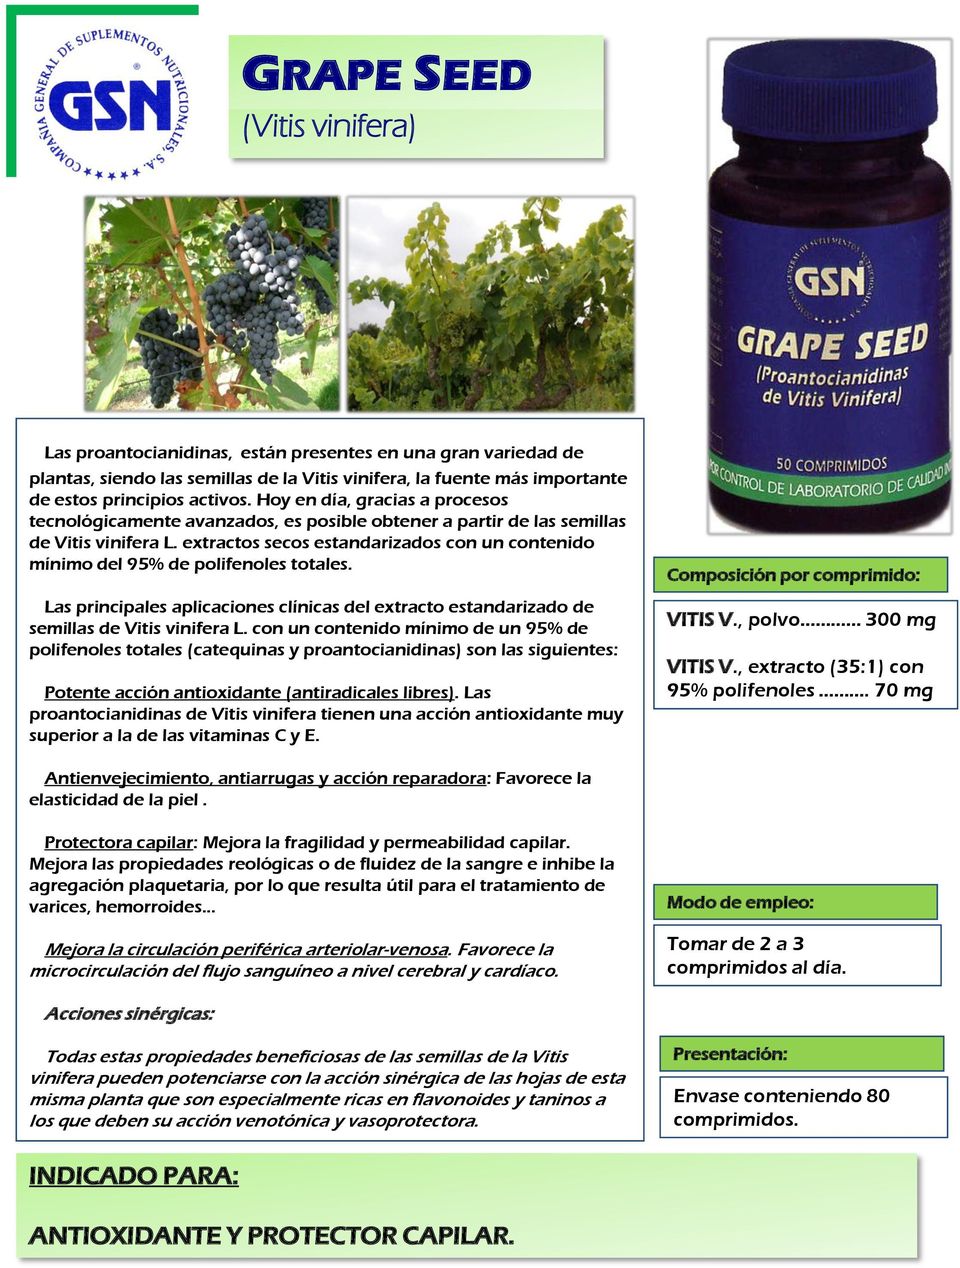 extractos secos estandarizados con un contenido mínimo del 95% de polifenoles totales. Las principales aplicaciones clínicas del extracto estandarizado de semillas de Vitis vinifera L.